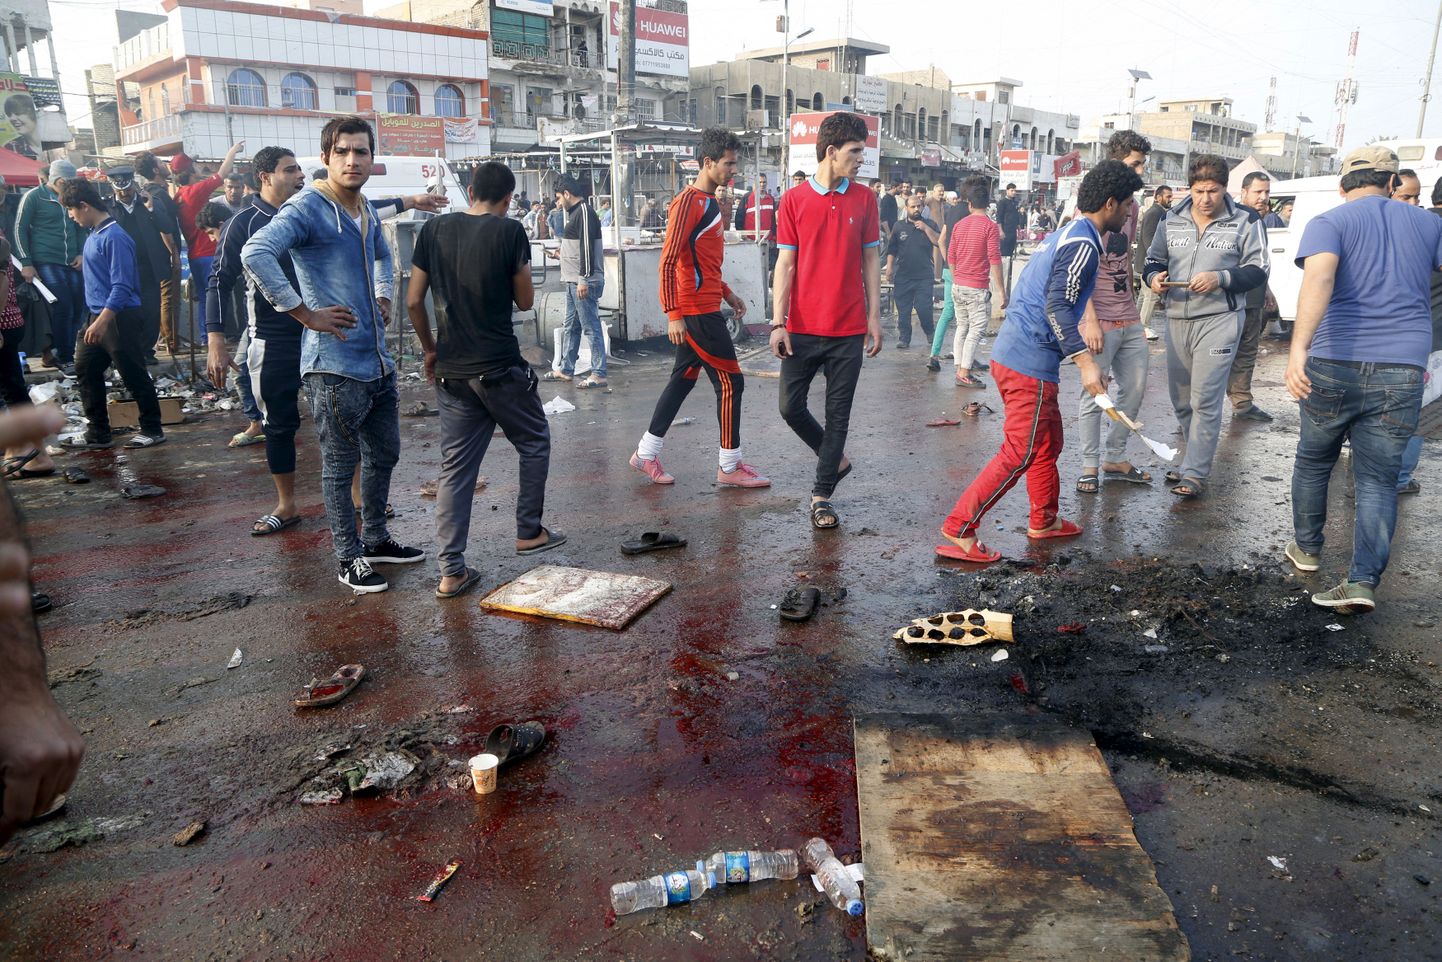 Kohalikud kogunemas Sadr City turul koha ümber, kus enesetapupommar end õhkis.